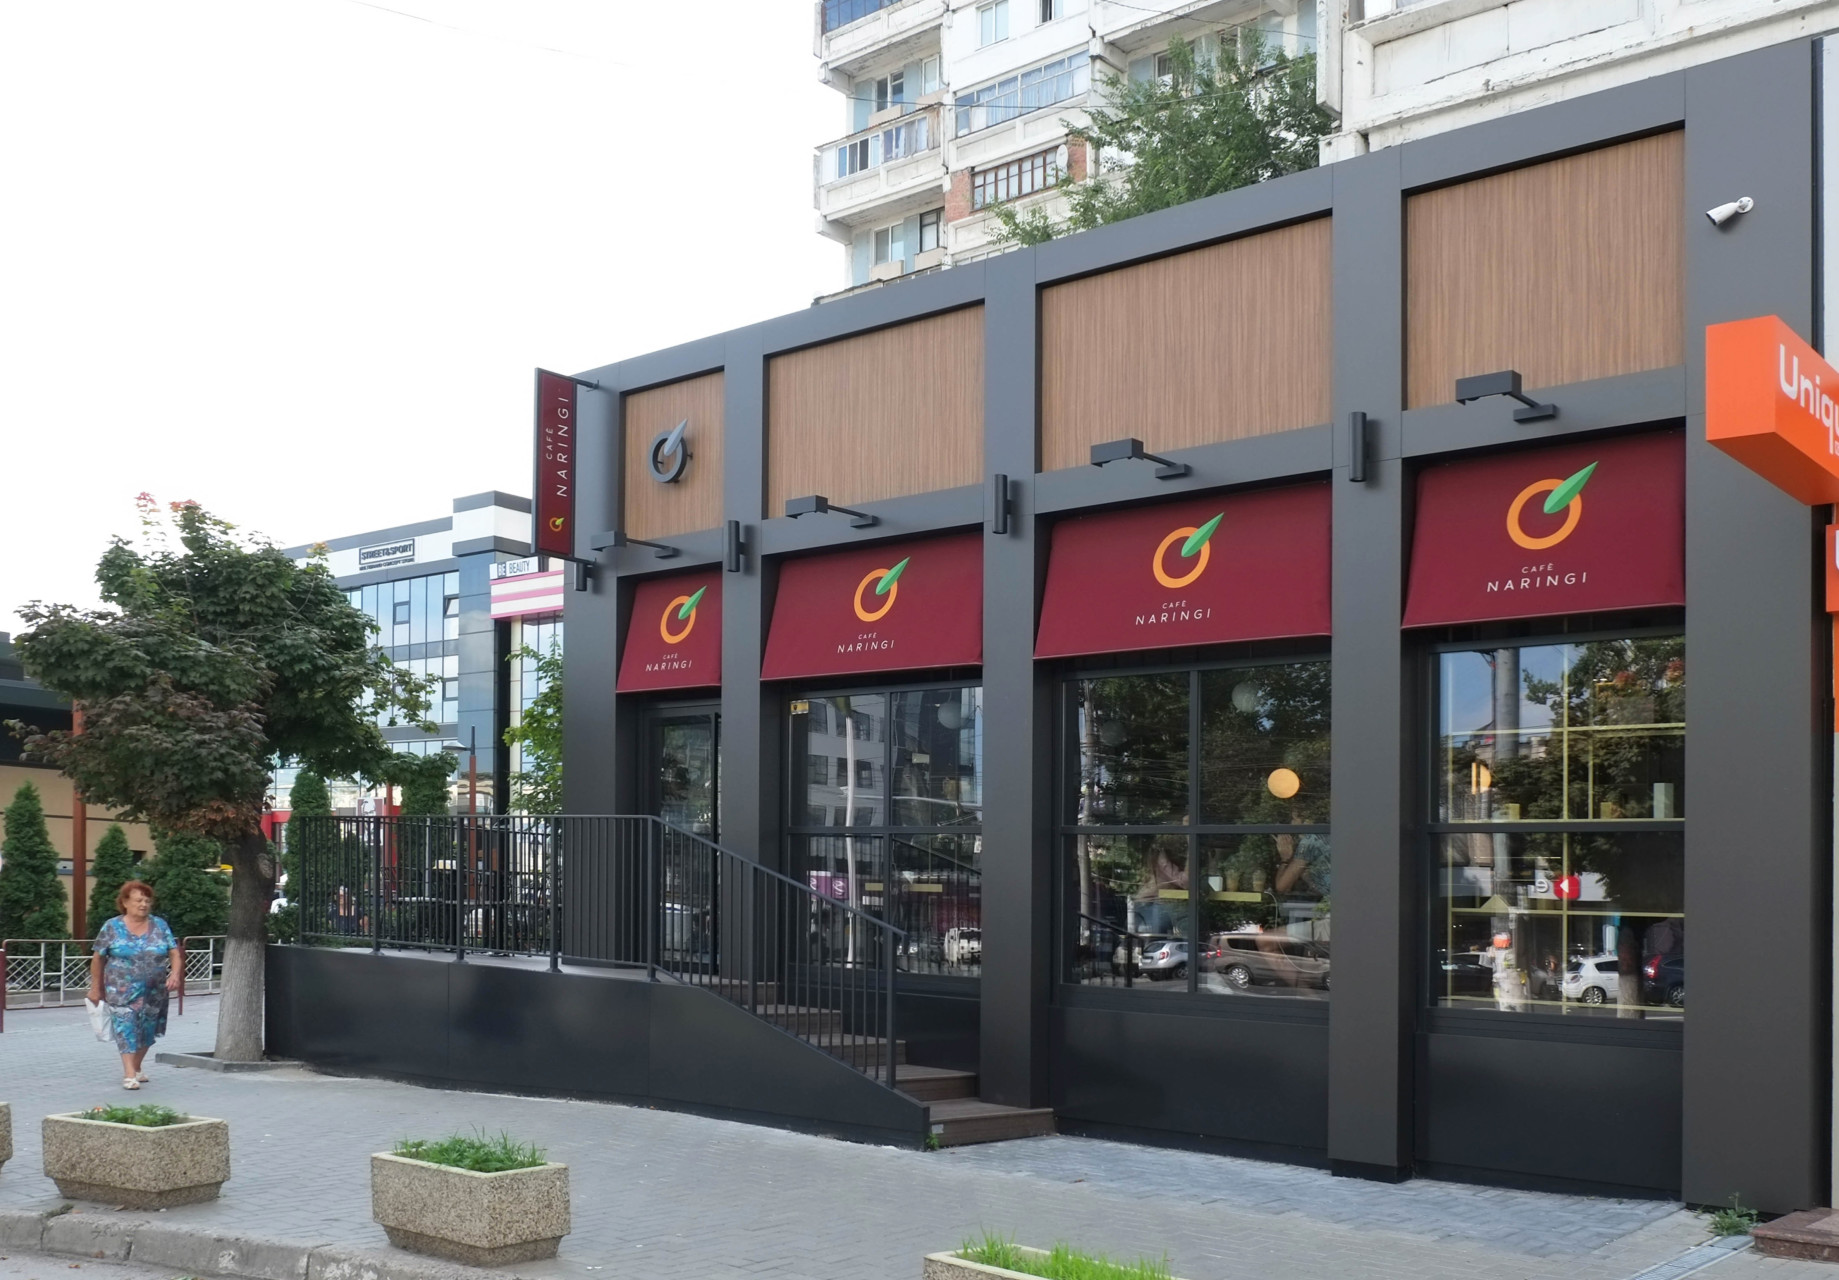 Naringi Café facade